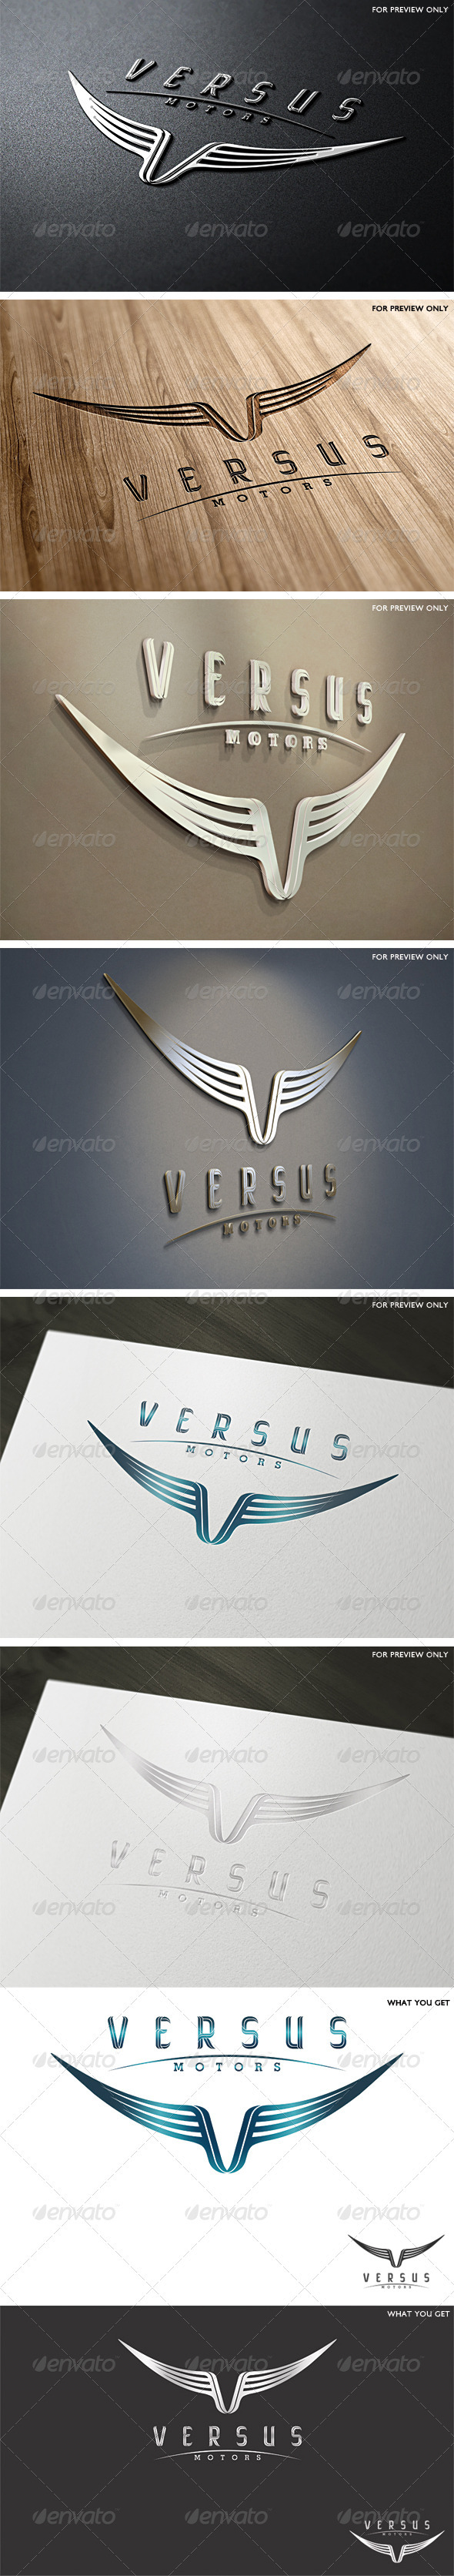 Versus Motors Logo Template